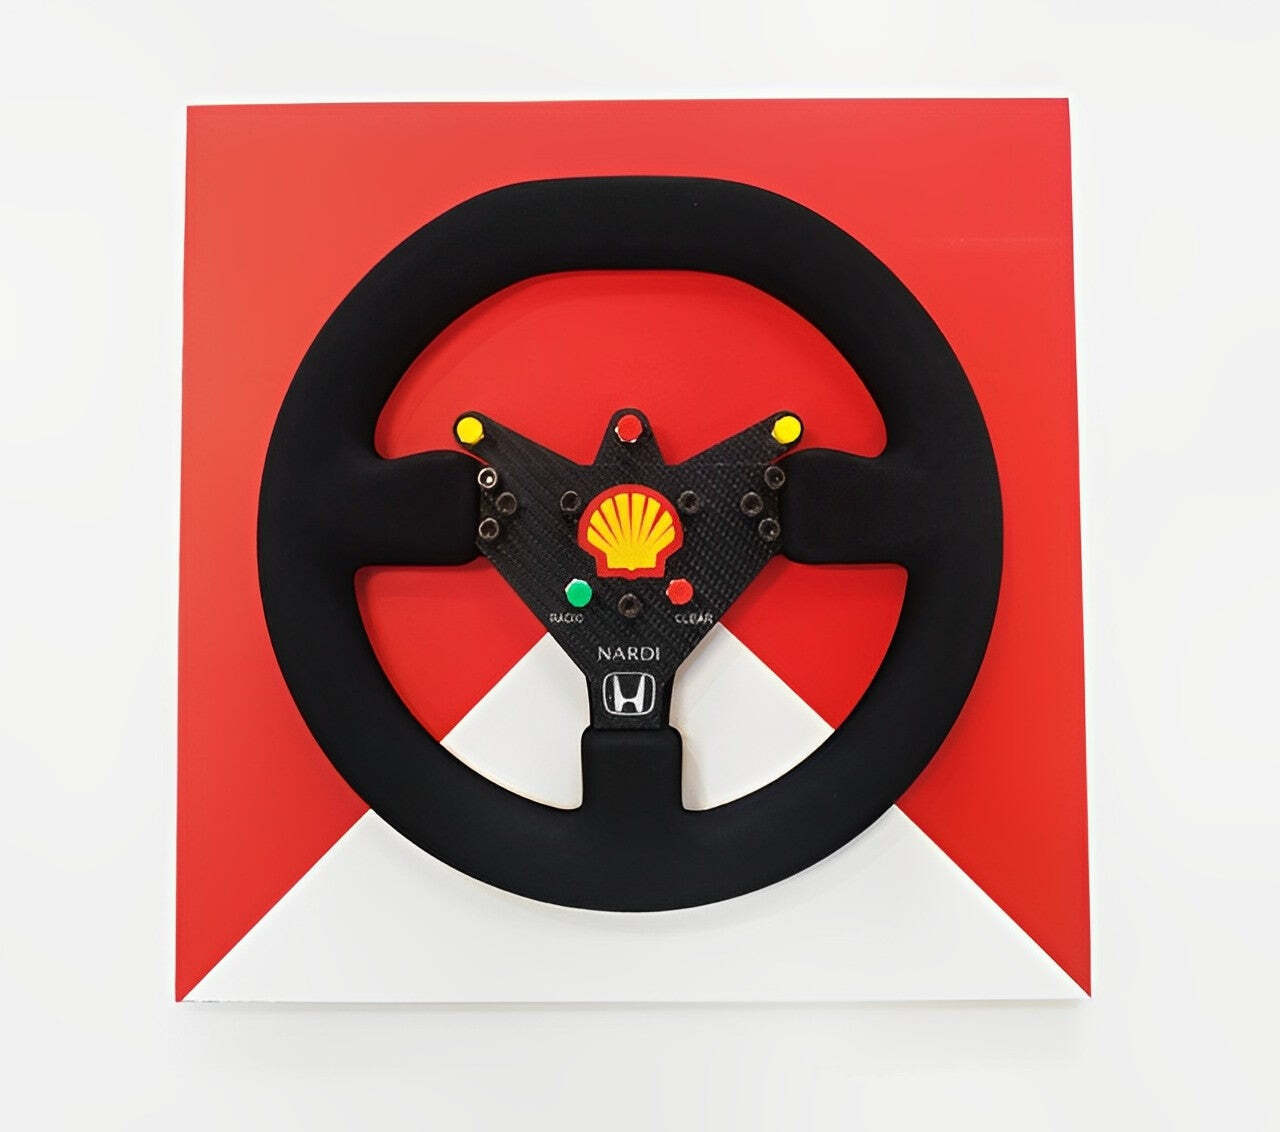 Ayrton Senna 1992 McLaren MP4/7 Steering Wheel 3D Wall Art - Team Theme